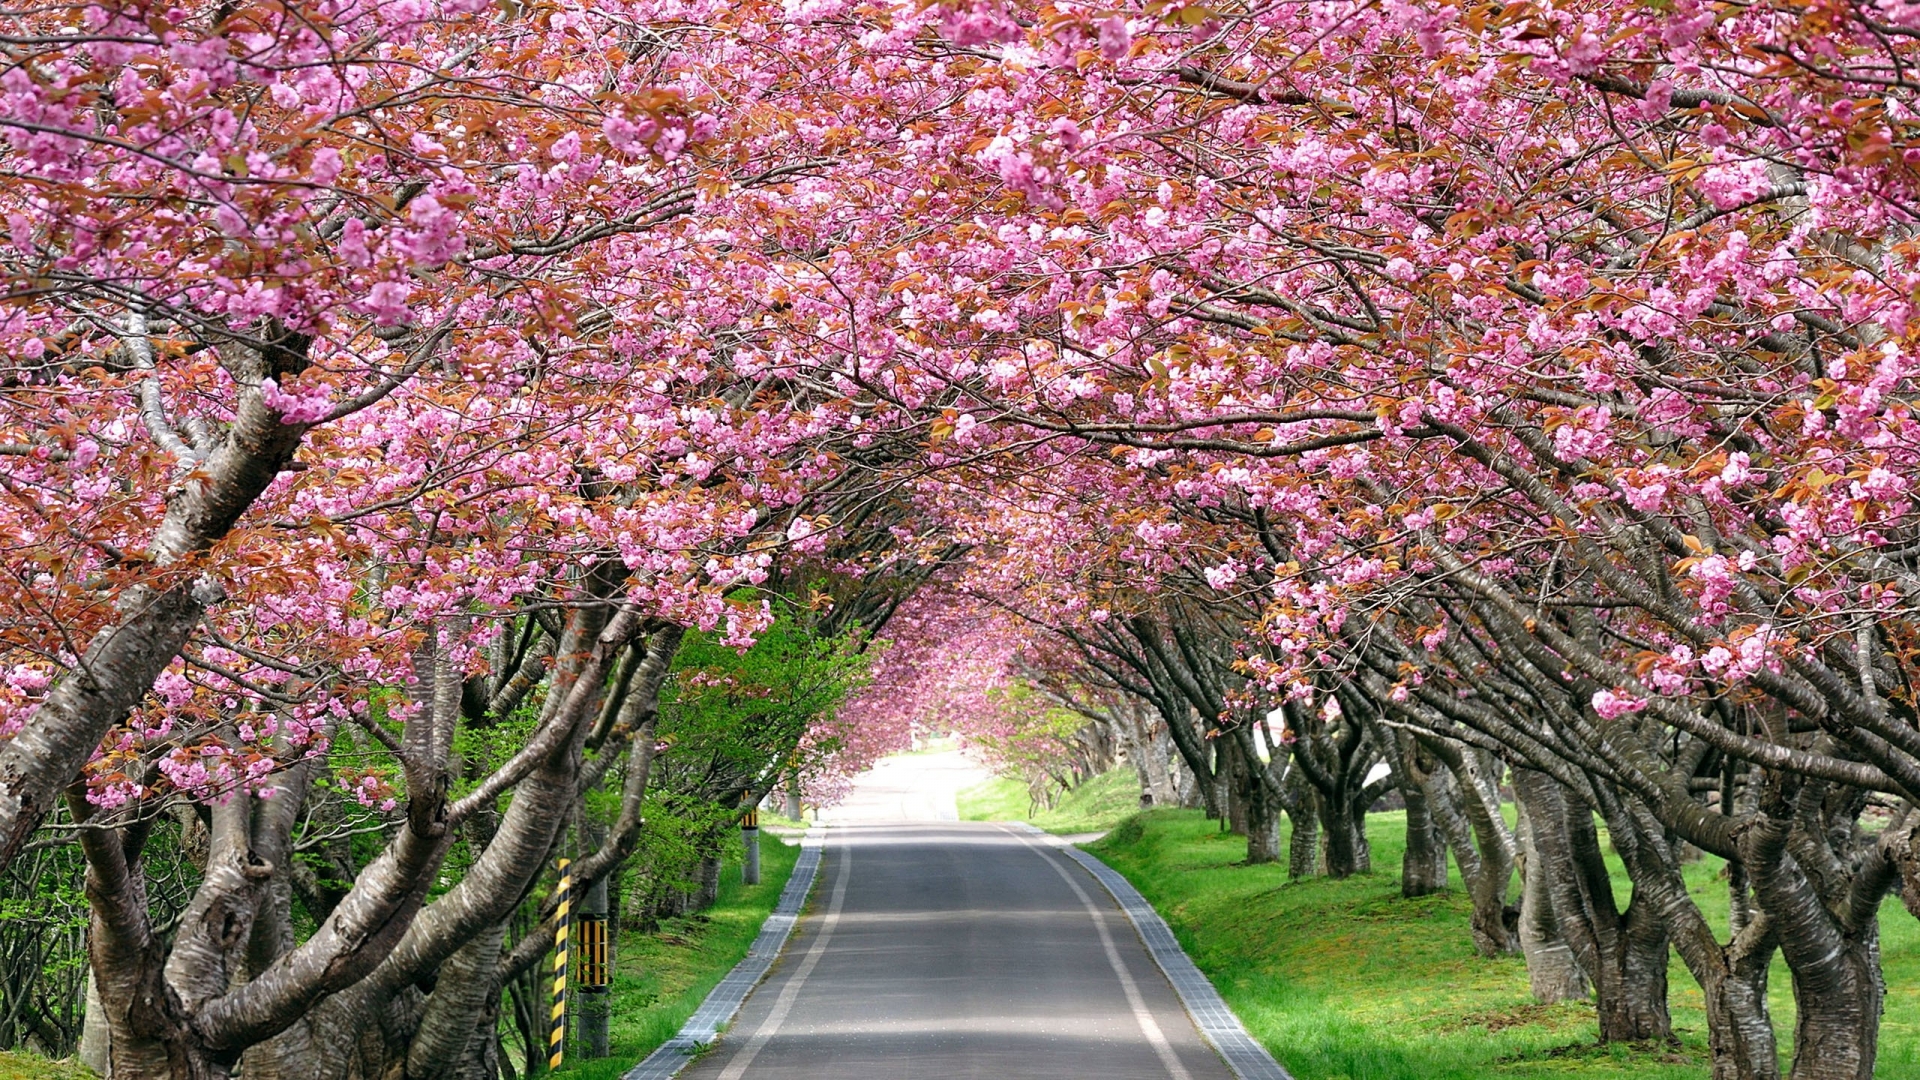 Splendid Cherry Blossom for 1920 x 1080 HDTV 1080p resolution